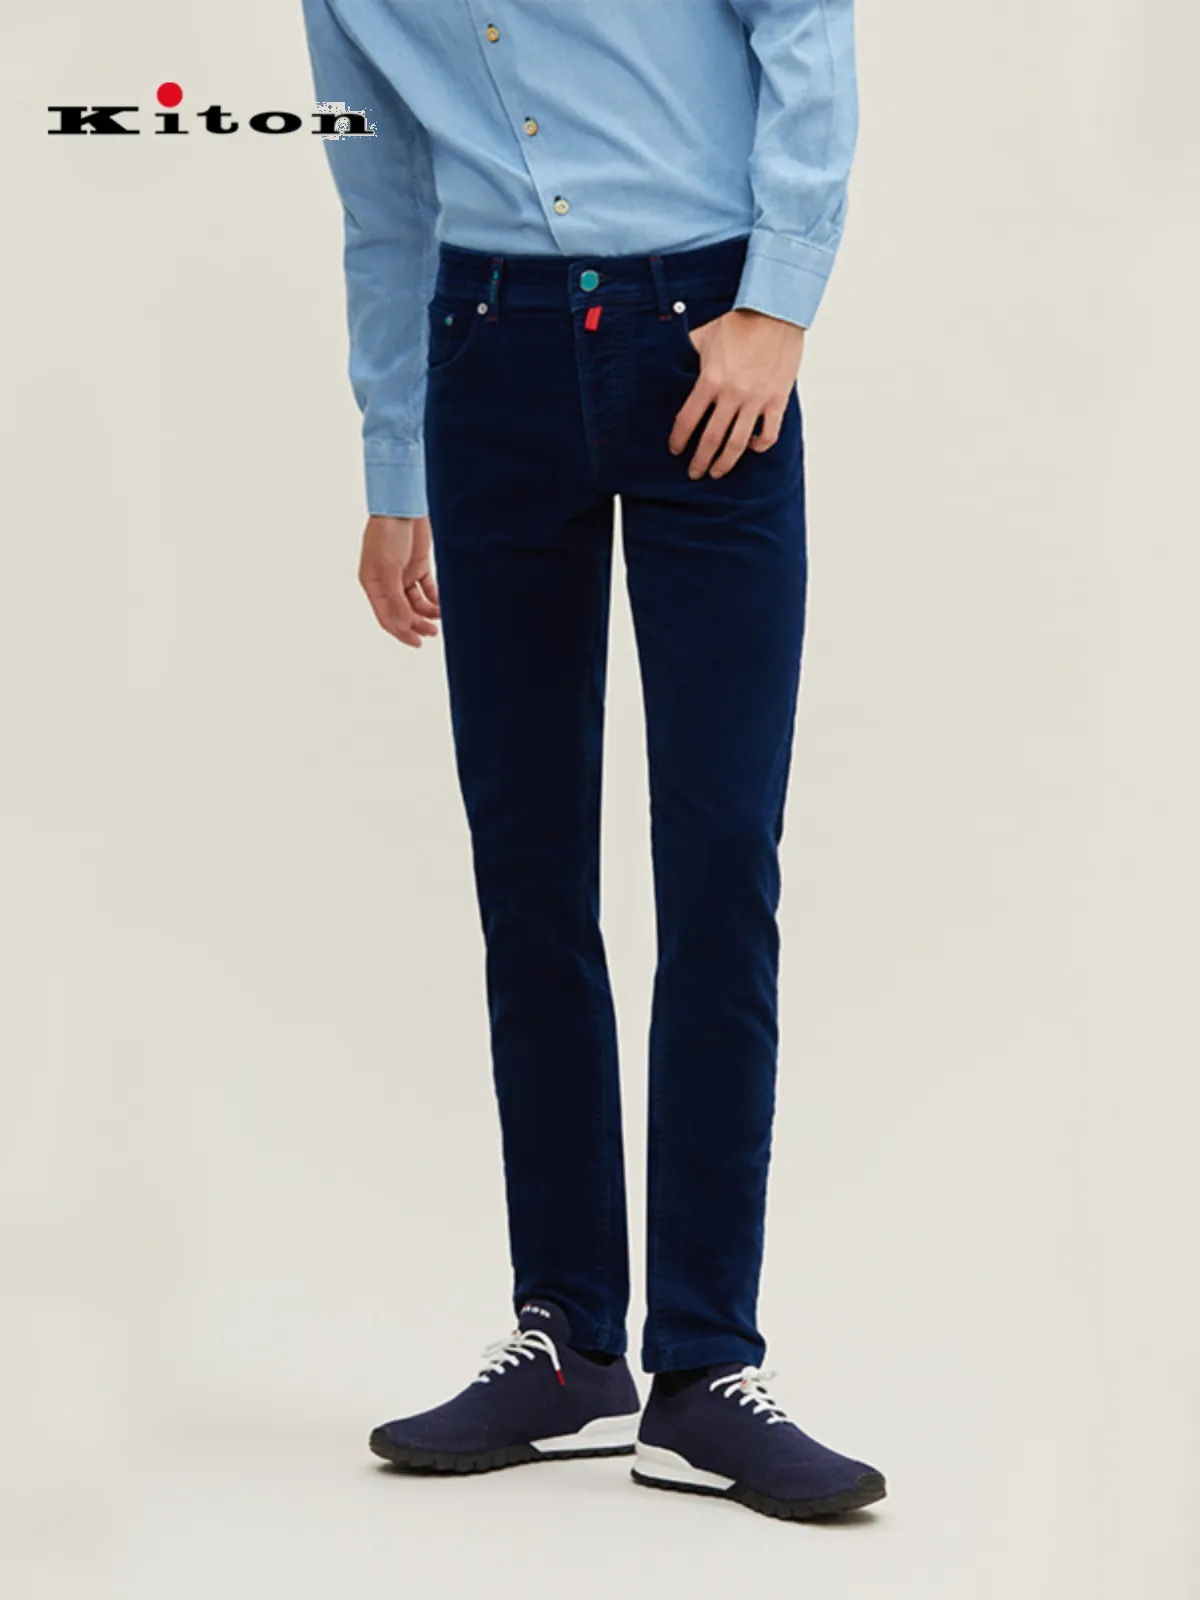 Kiton – jean moulant droit bleu pour homme, pantalon décontracté, automne